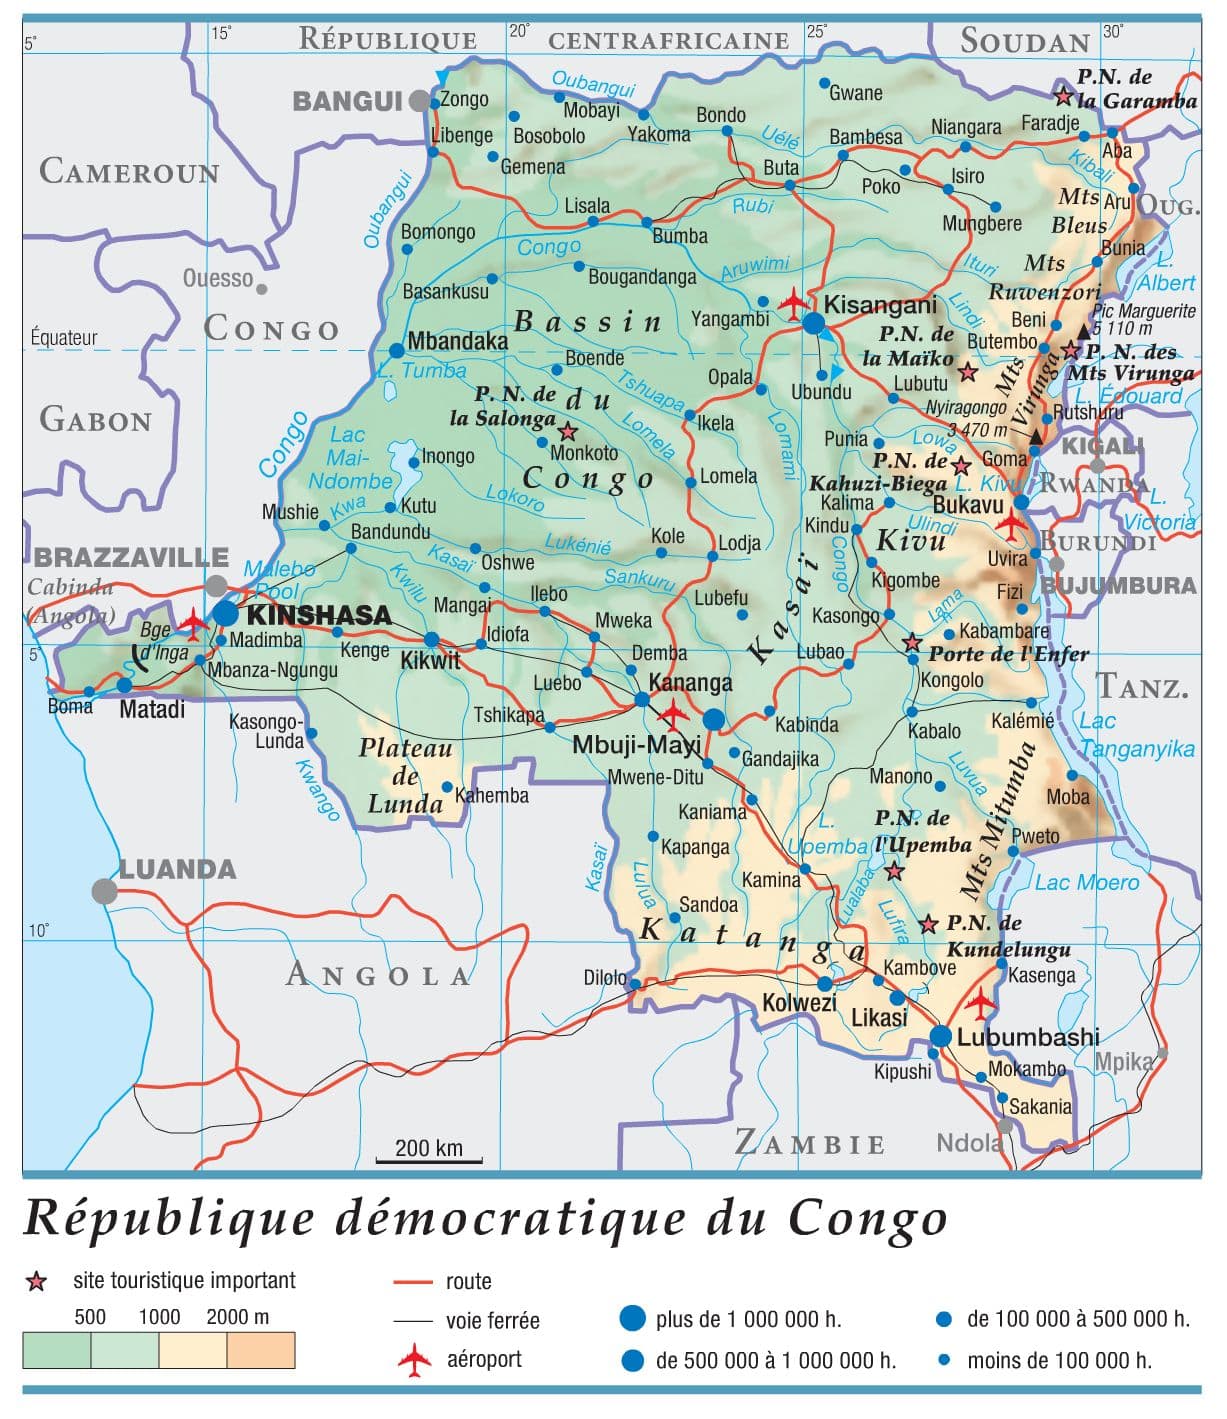 Encyclopédie Larousse en ligne  République démocratique du Congo